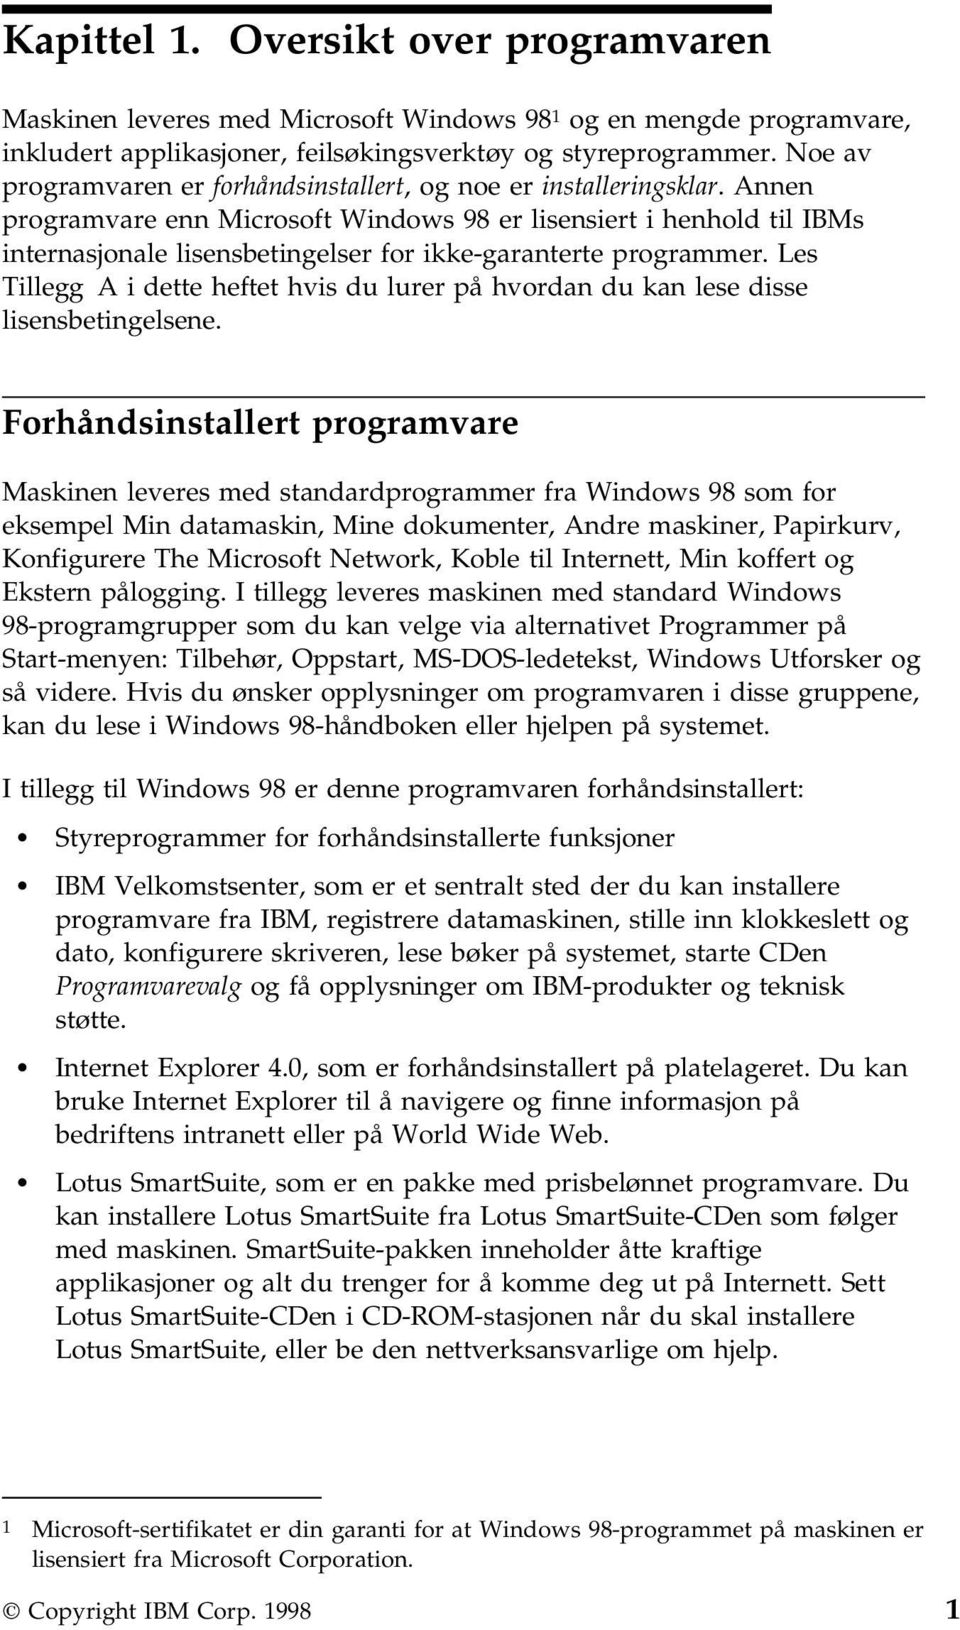 Annen programvare enn Microsoft Windows 98 er lisensiert i henhold til IBMs internasjonale lisensbetingelser for ikke-garanterte programmer.